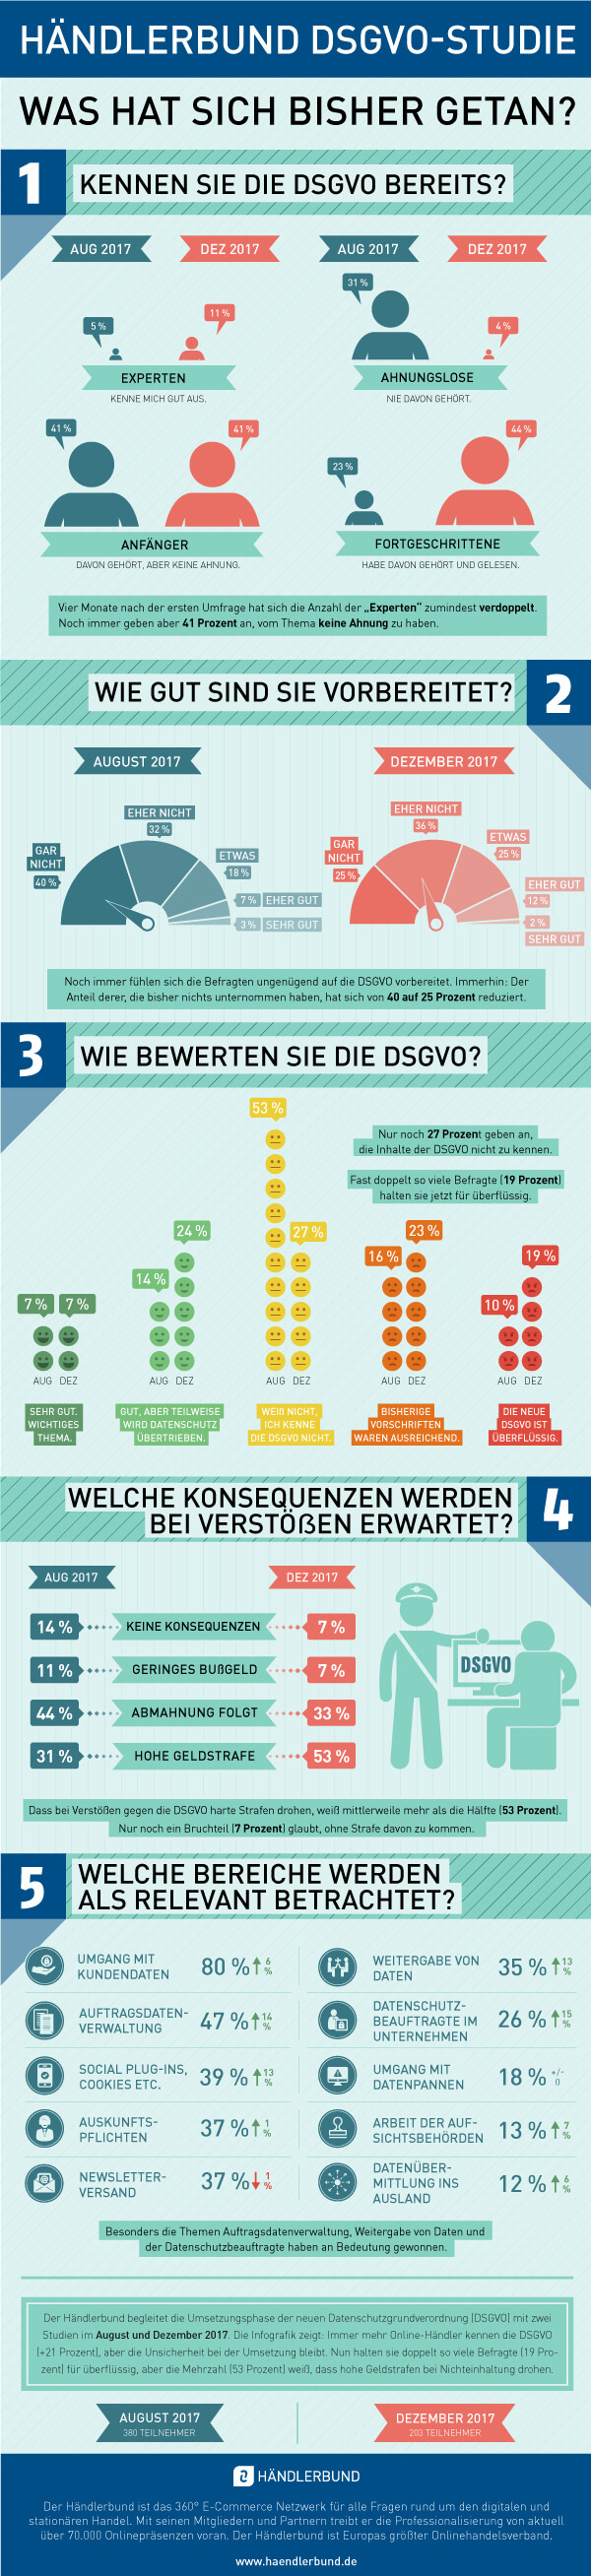 Händlerbund Infografik zur DSGVO 